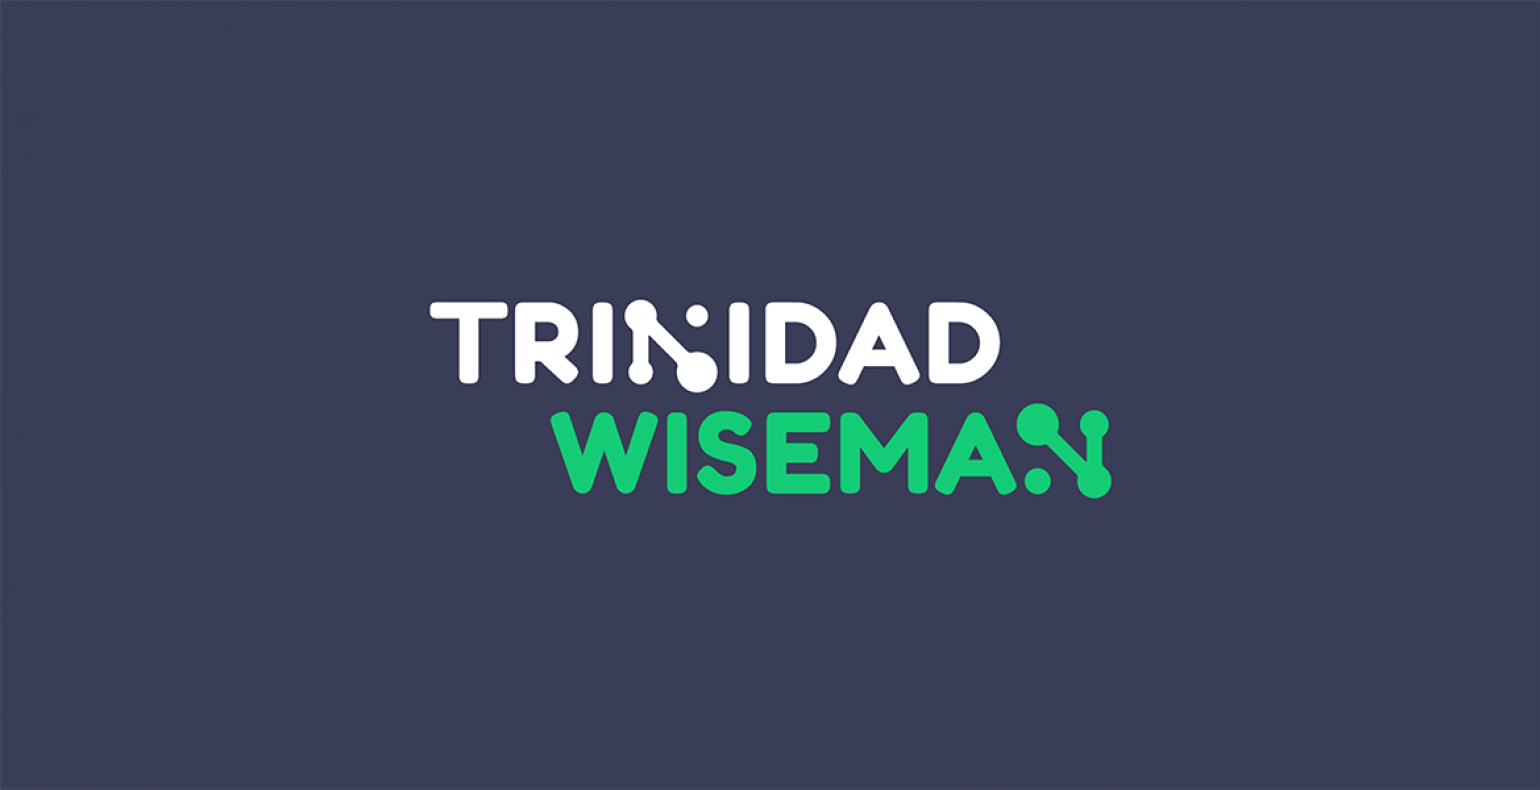 Trinidad Wiseman logo